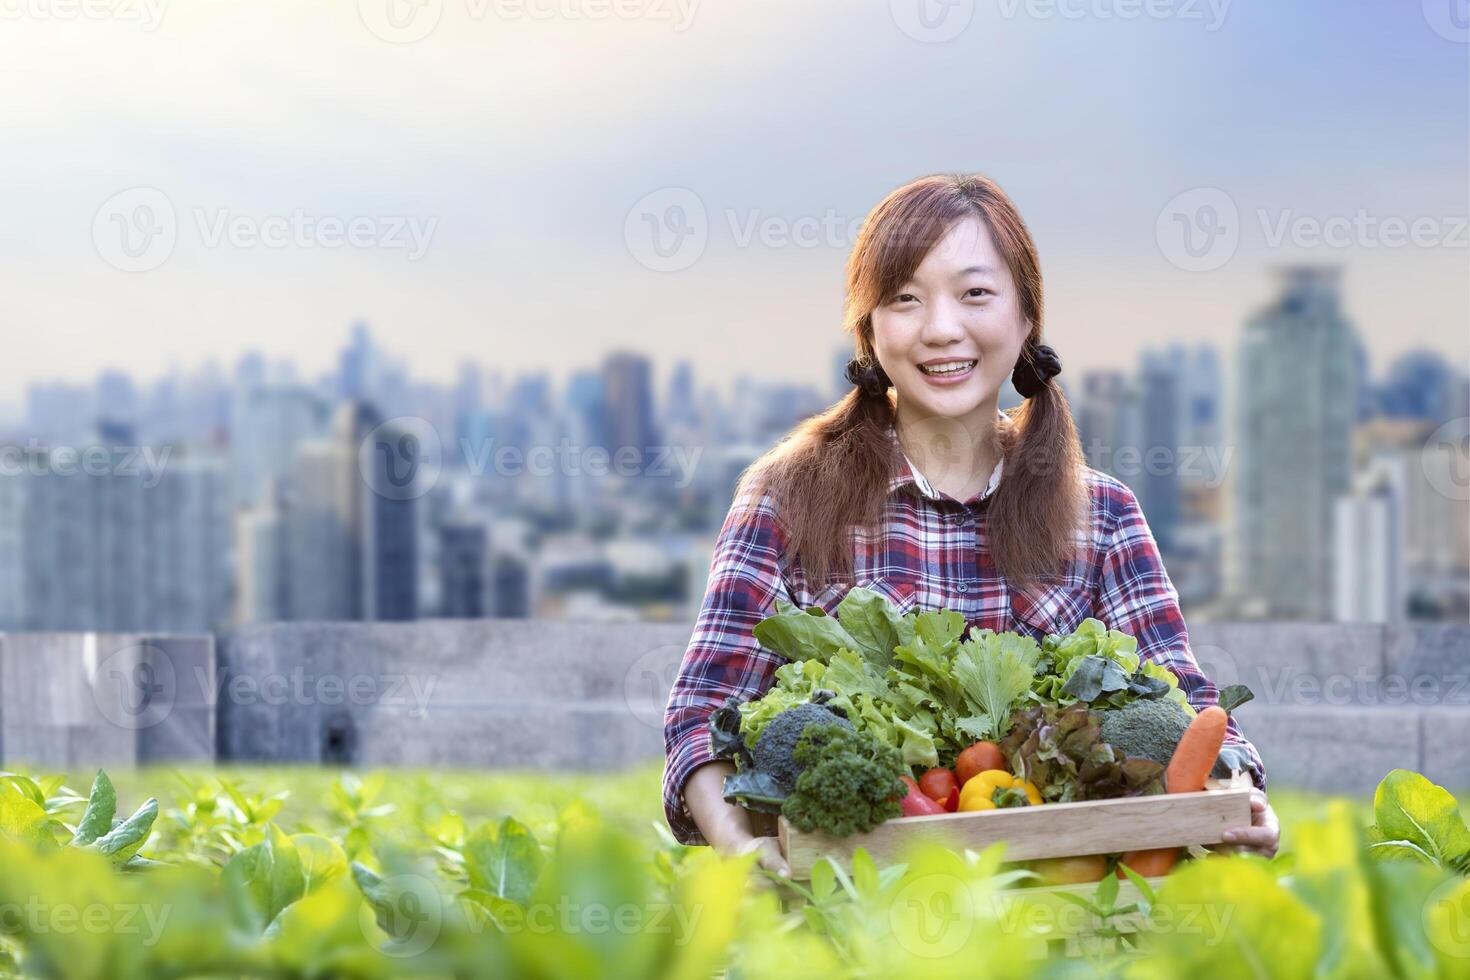 ásia mulher jardineiro é colheita orgânico vegetal enquanto trabalhando às telhado urbano agricultura futurista cidade sustentável jardinagem em a limitado espaço para reduzir carbono pegada e Comida segurança foto